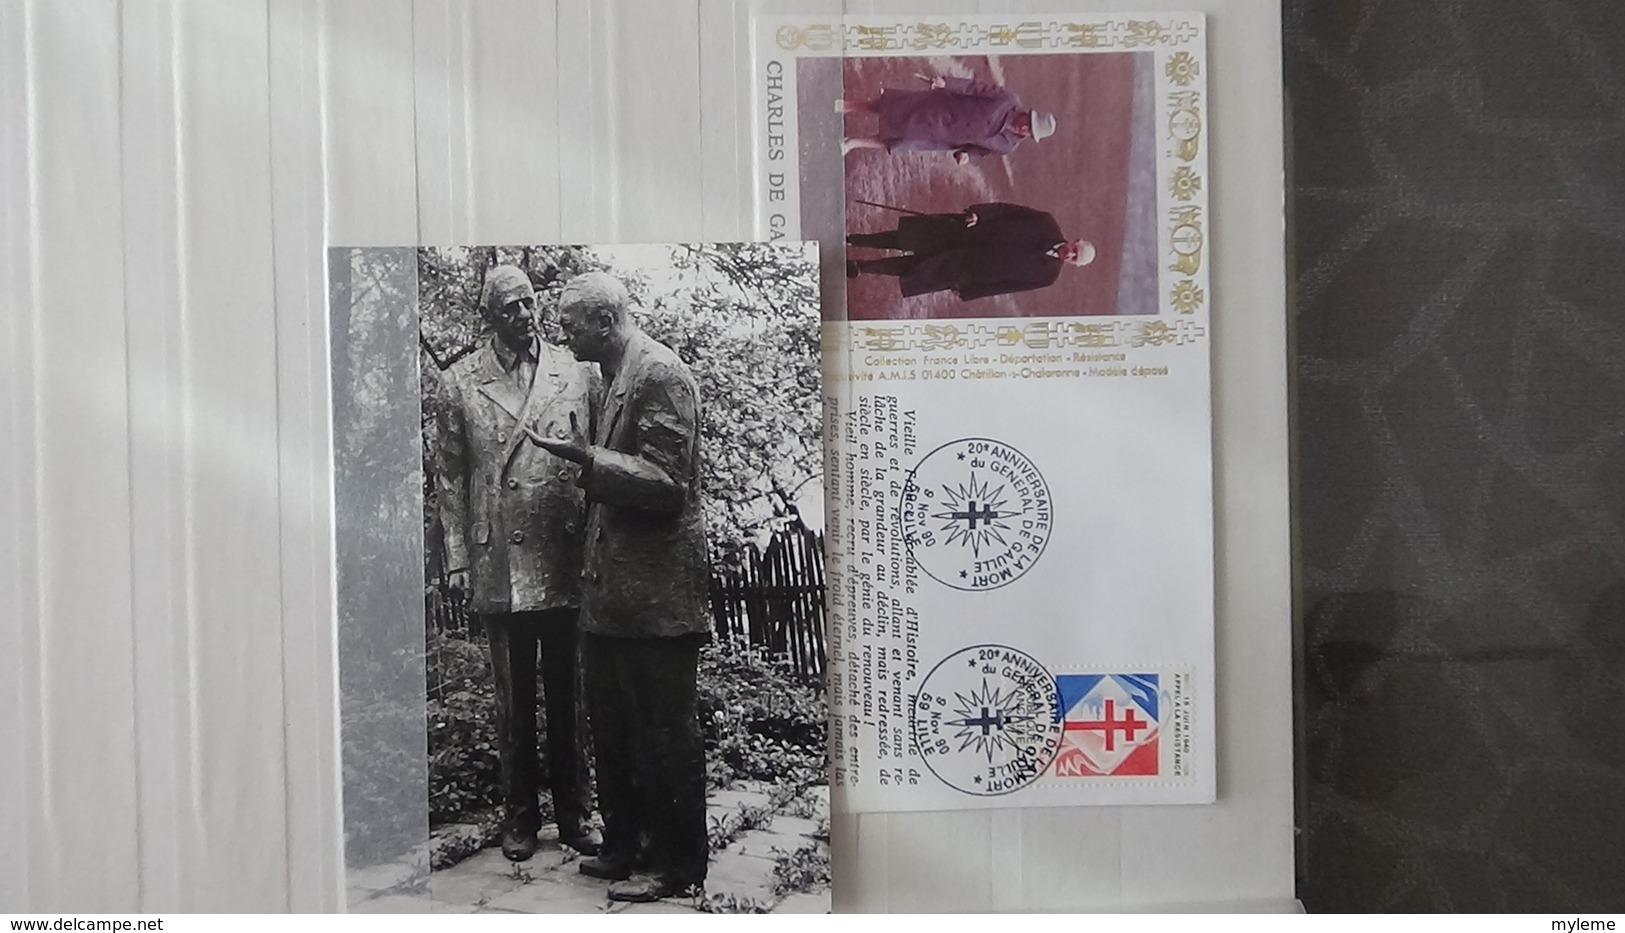 Belle thématique sur le Général De Gaulle, timbres), ND, blocs, enveloppes .... A saisir !!!